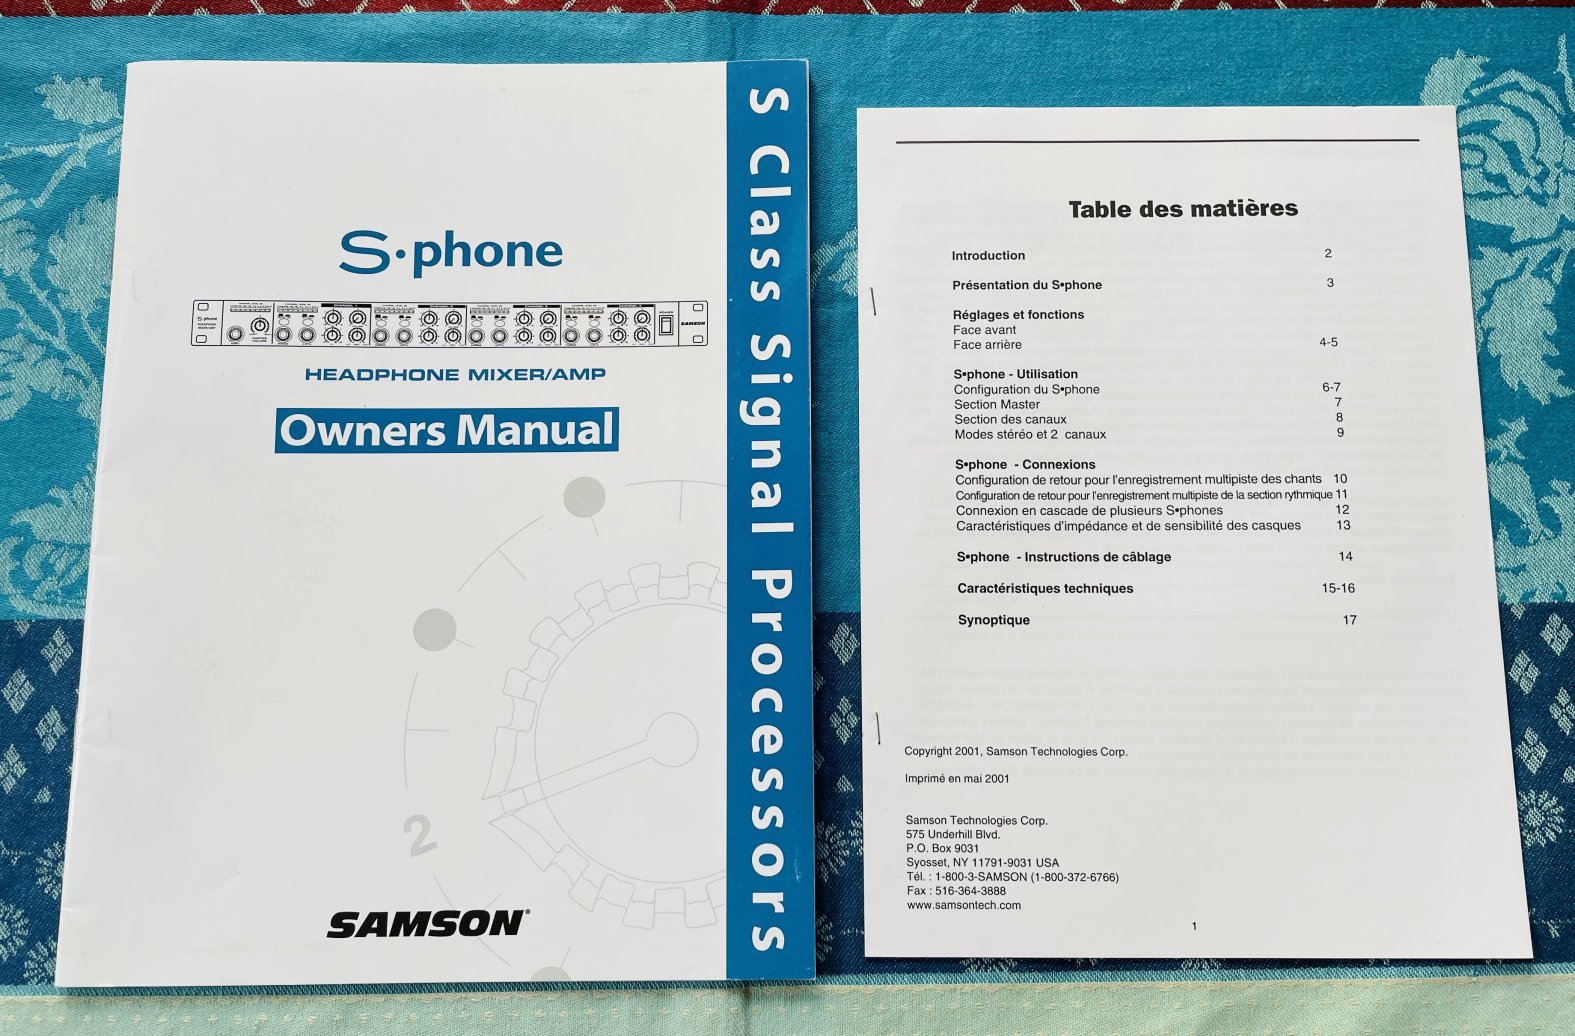 Mixer casque Samson S-Phone n°A10/0021e, notices – Au Son Vert